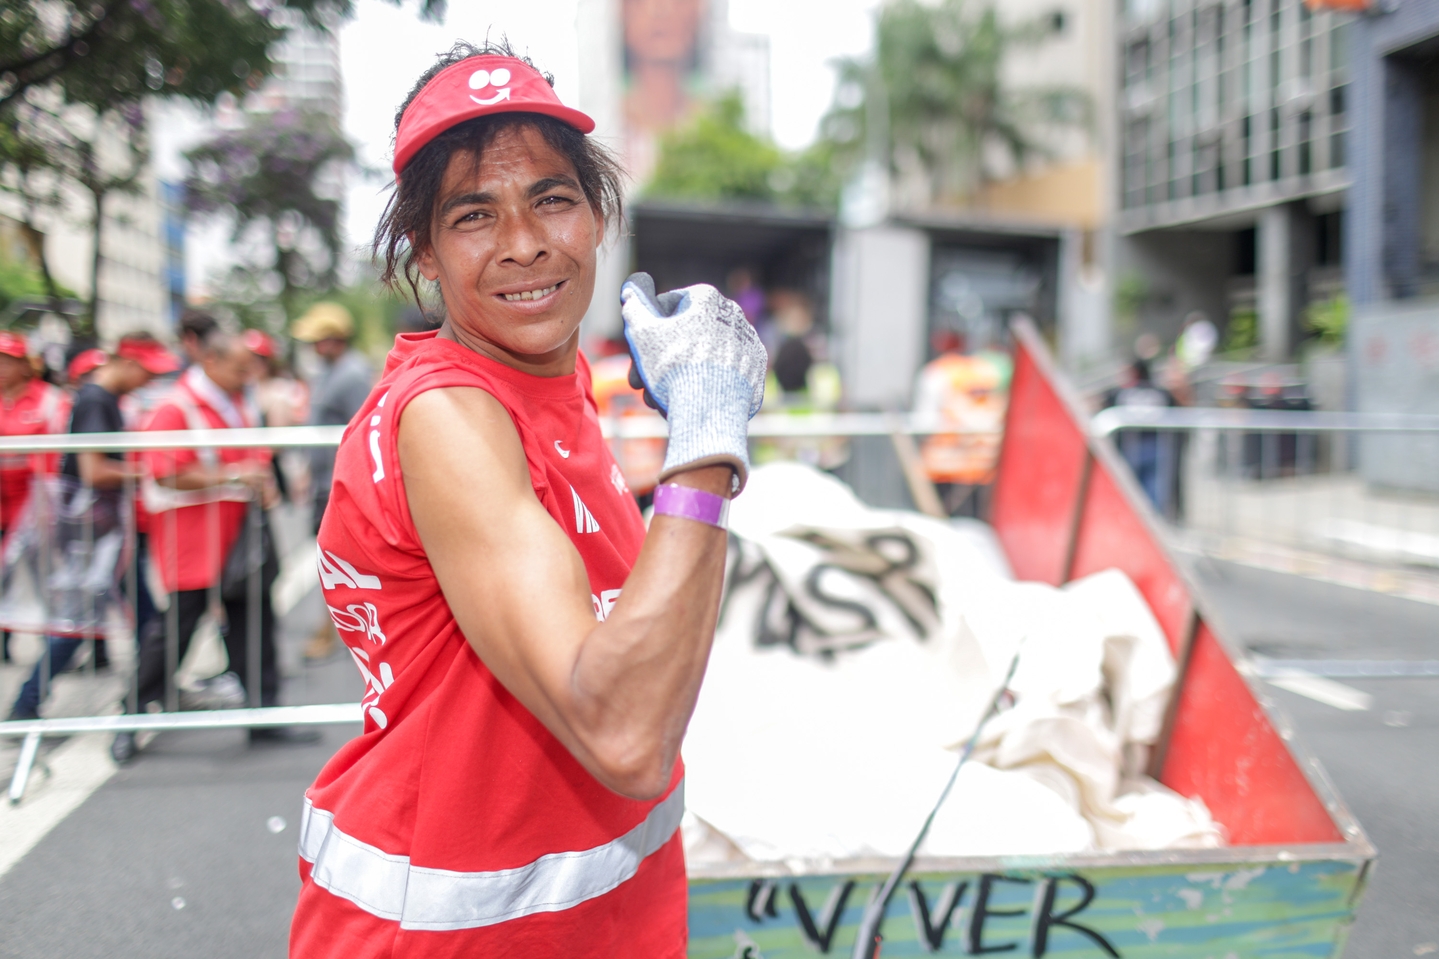 Elismaura perdeu a noção de quantos quilos carrega durante um bloco de carnaval  Foto: Ricardo Matsukawa/Especial para o Terra